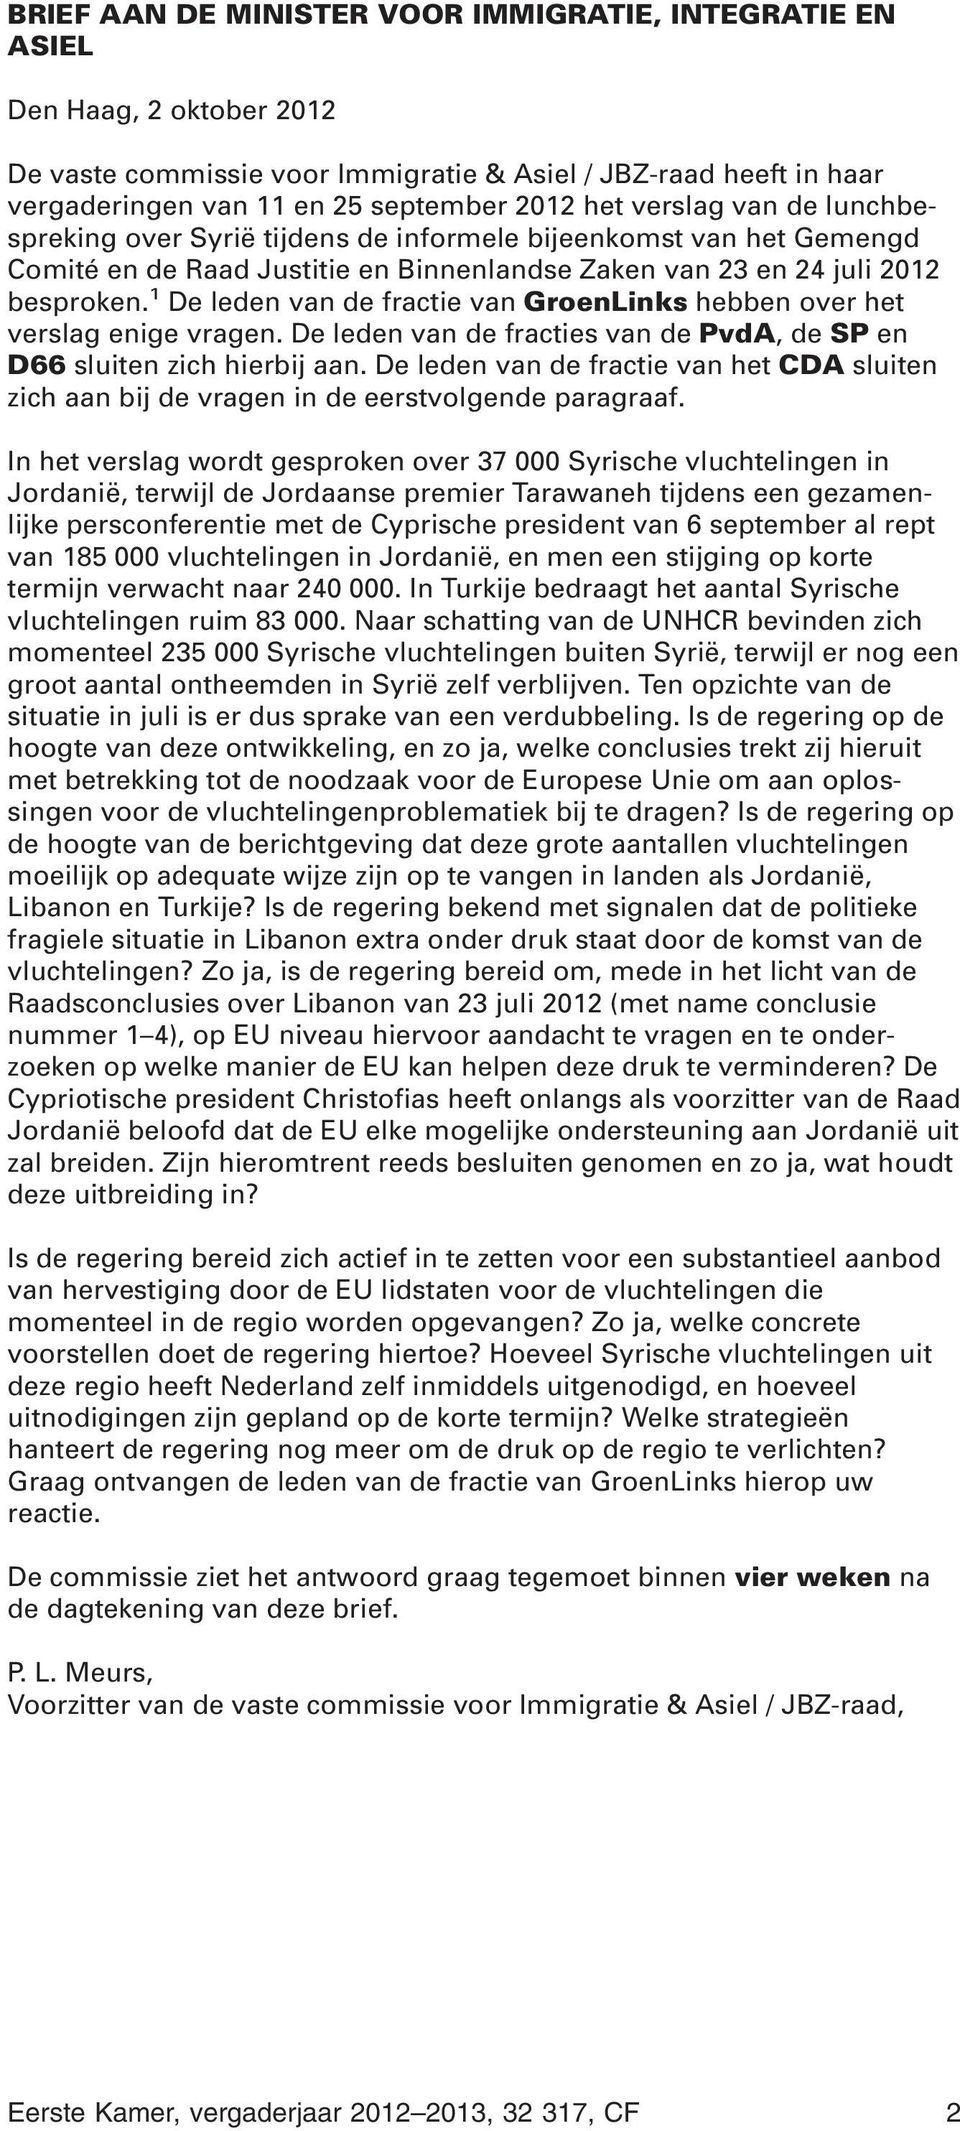 1 De leden van de fractie van GroenLinks hebben over het verslag enige vragen. De leden van de fracties van de PvdA, de SP en D66 sluiten zich hierbij aan.